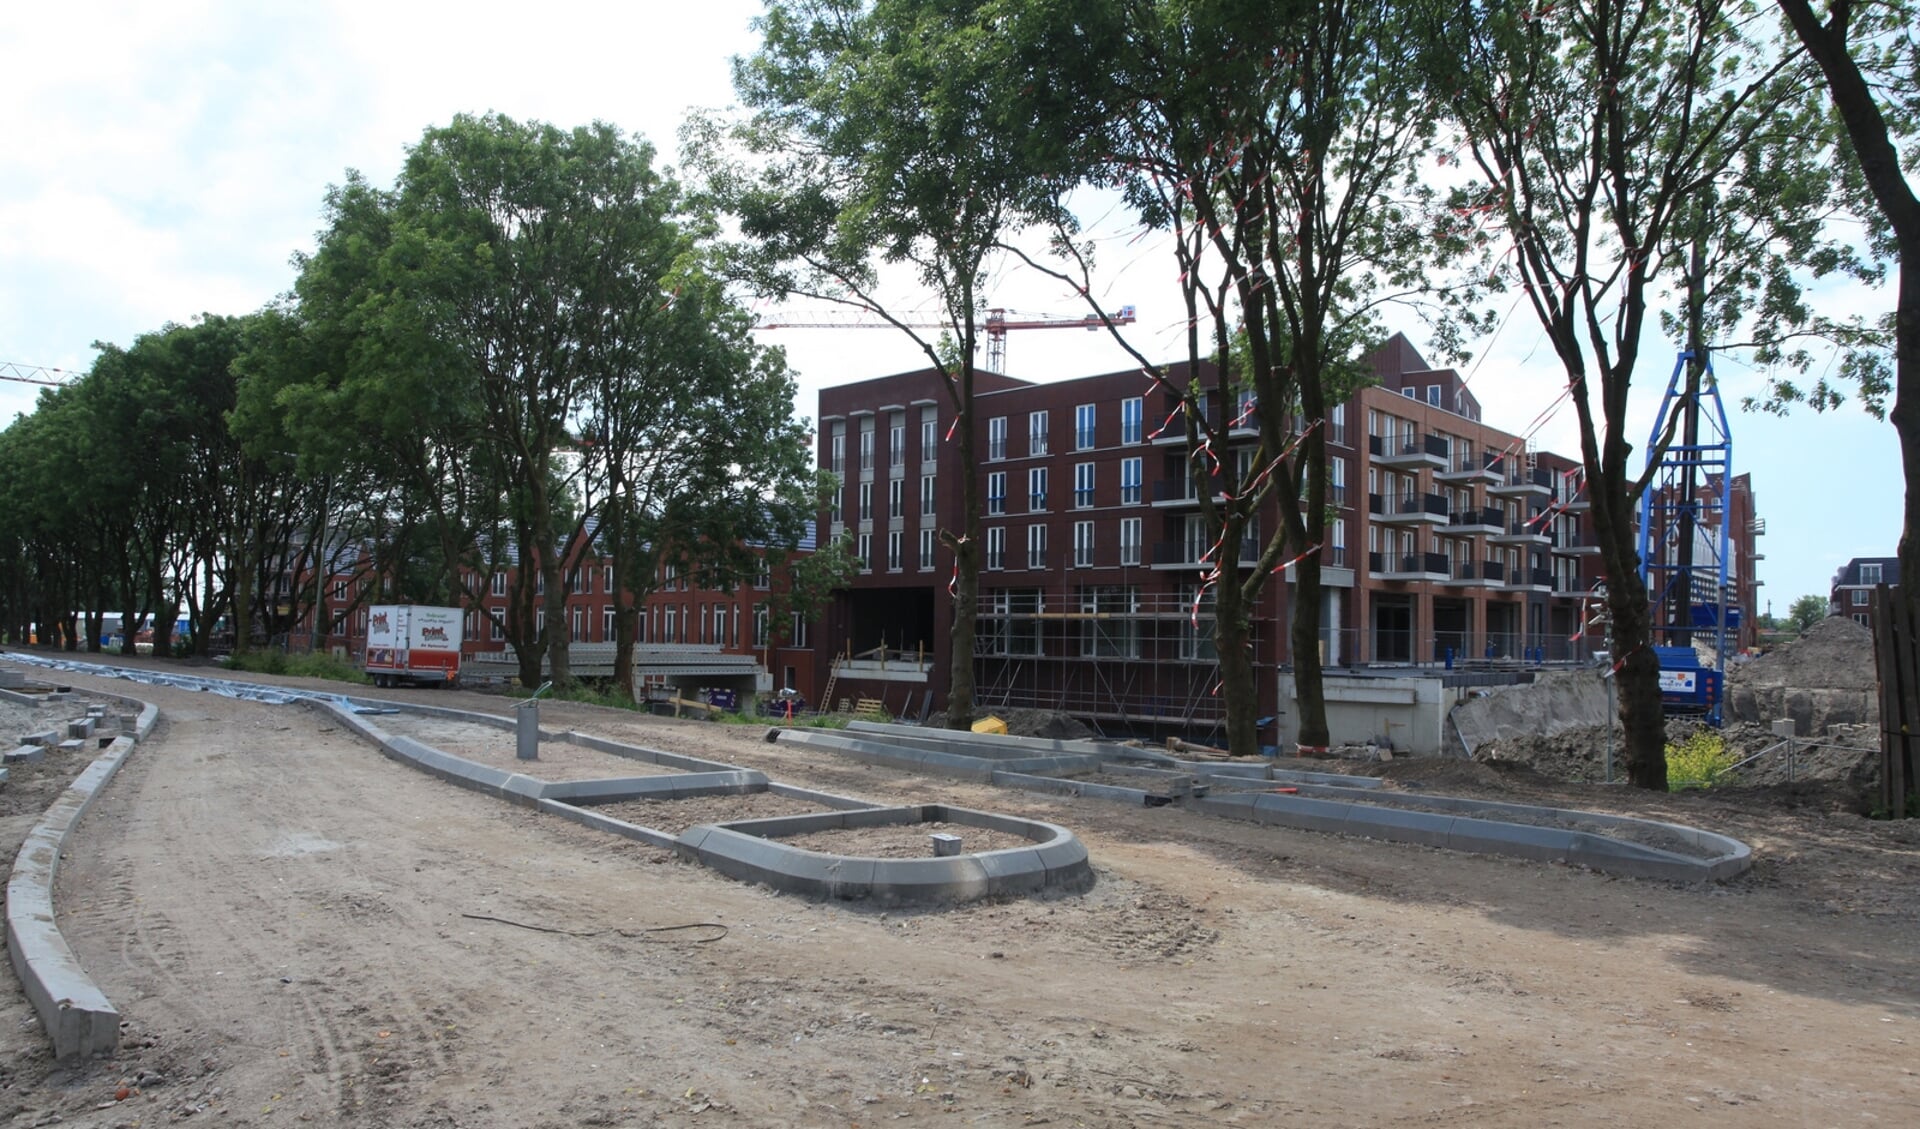 Het Gouweplein in aanbouw, in november vijf jaar geleden. (foto: archief HvH)